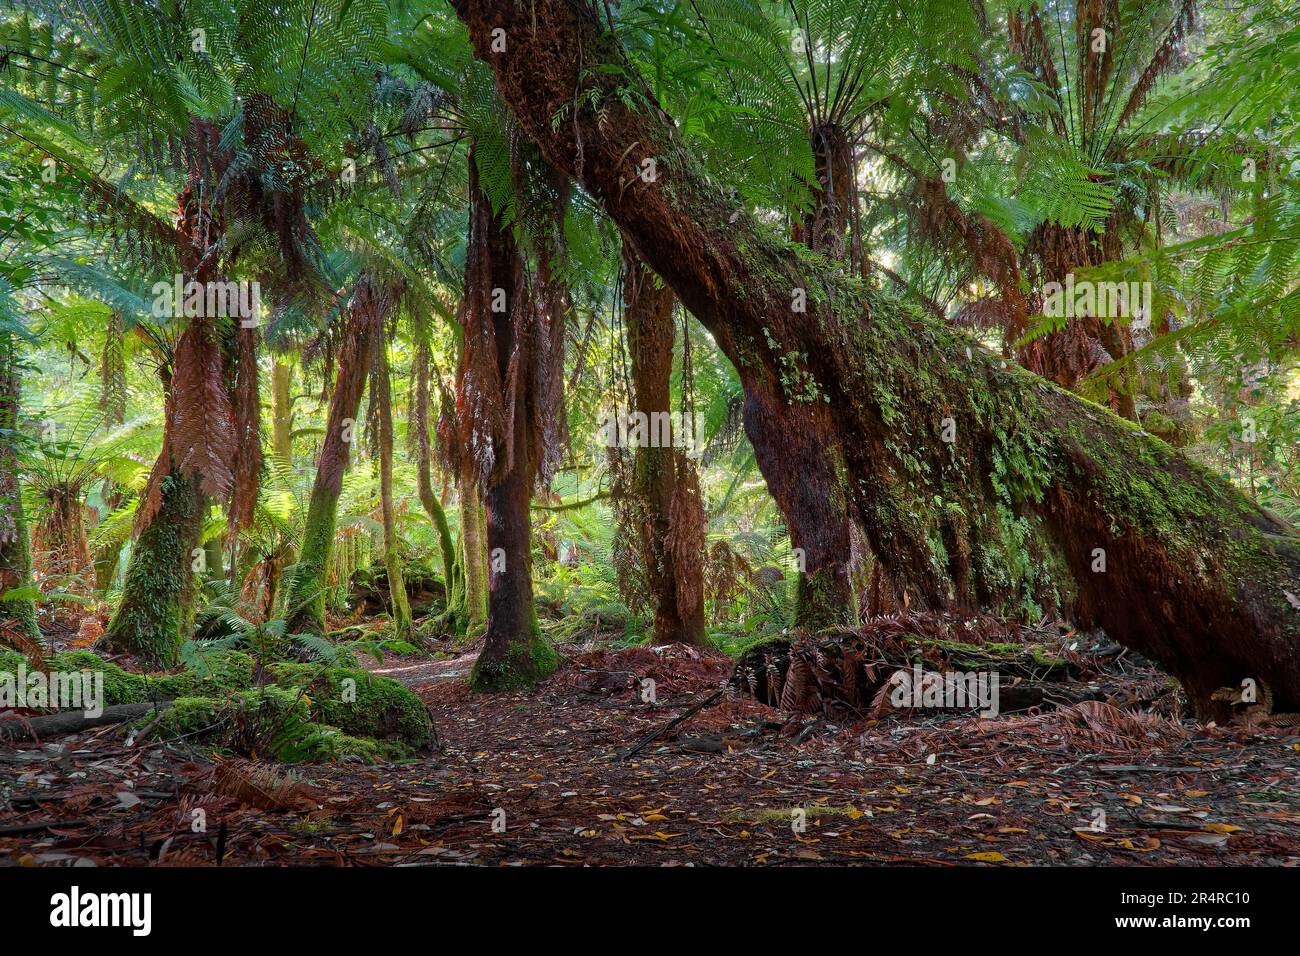 Tree ferns in Styx Tall Trees Conservation Area, Tasmania, Australia Stock Photo